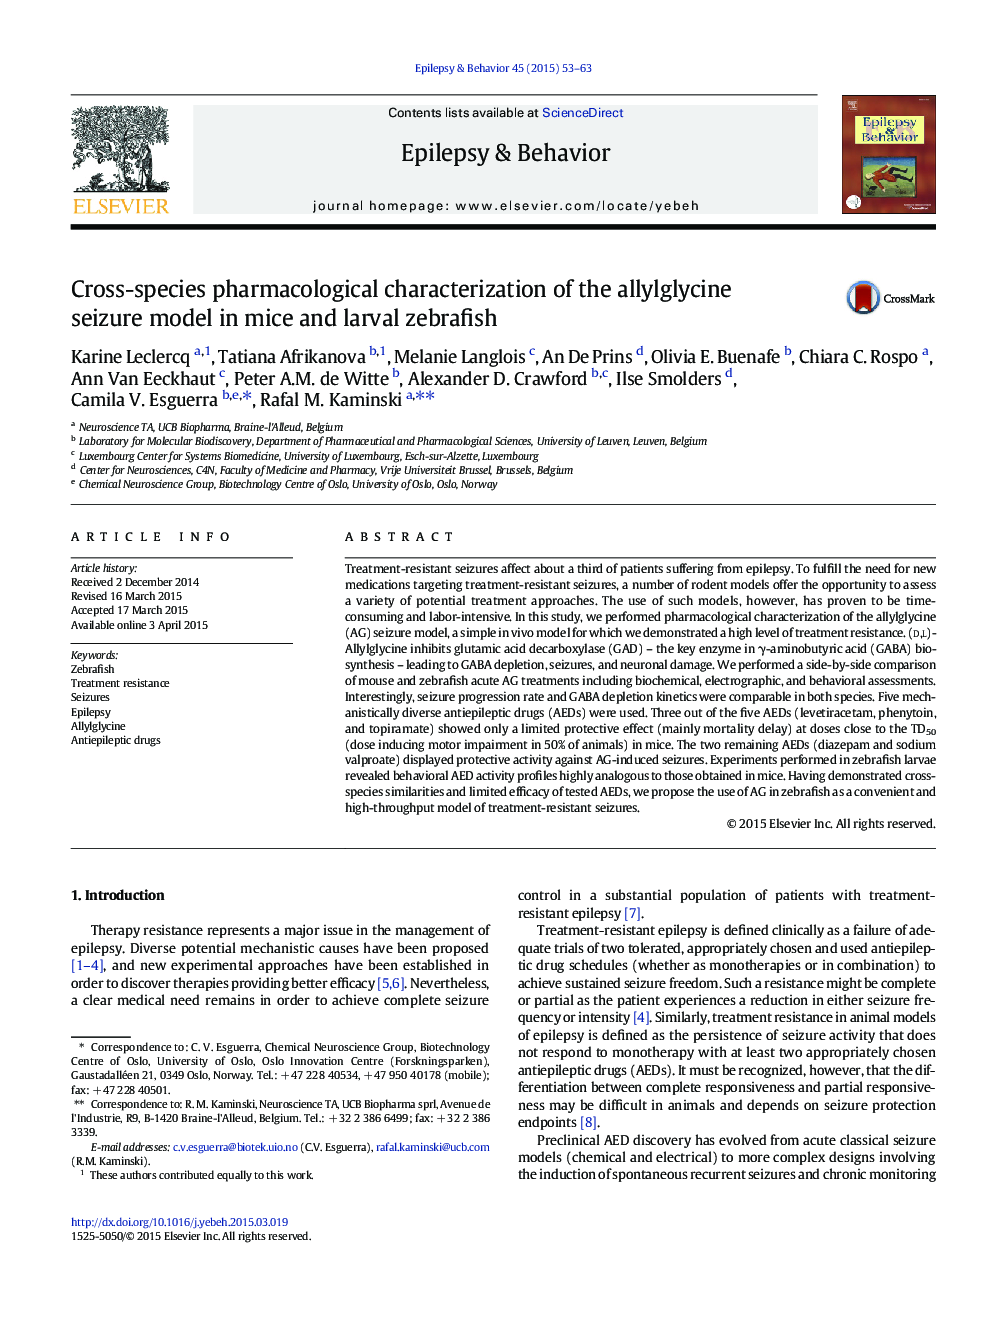 بررسی مشخصات فارماکولوژیک متقاطع گونه مدل تشنج آللیگلسیشن در موش و ماهی قزل آلا لارو 